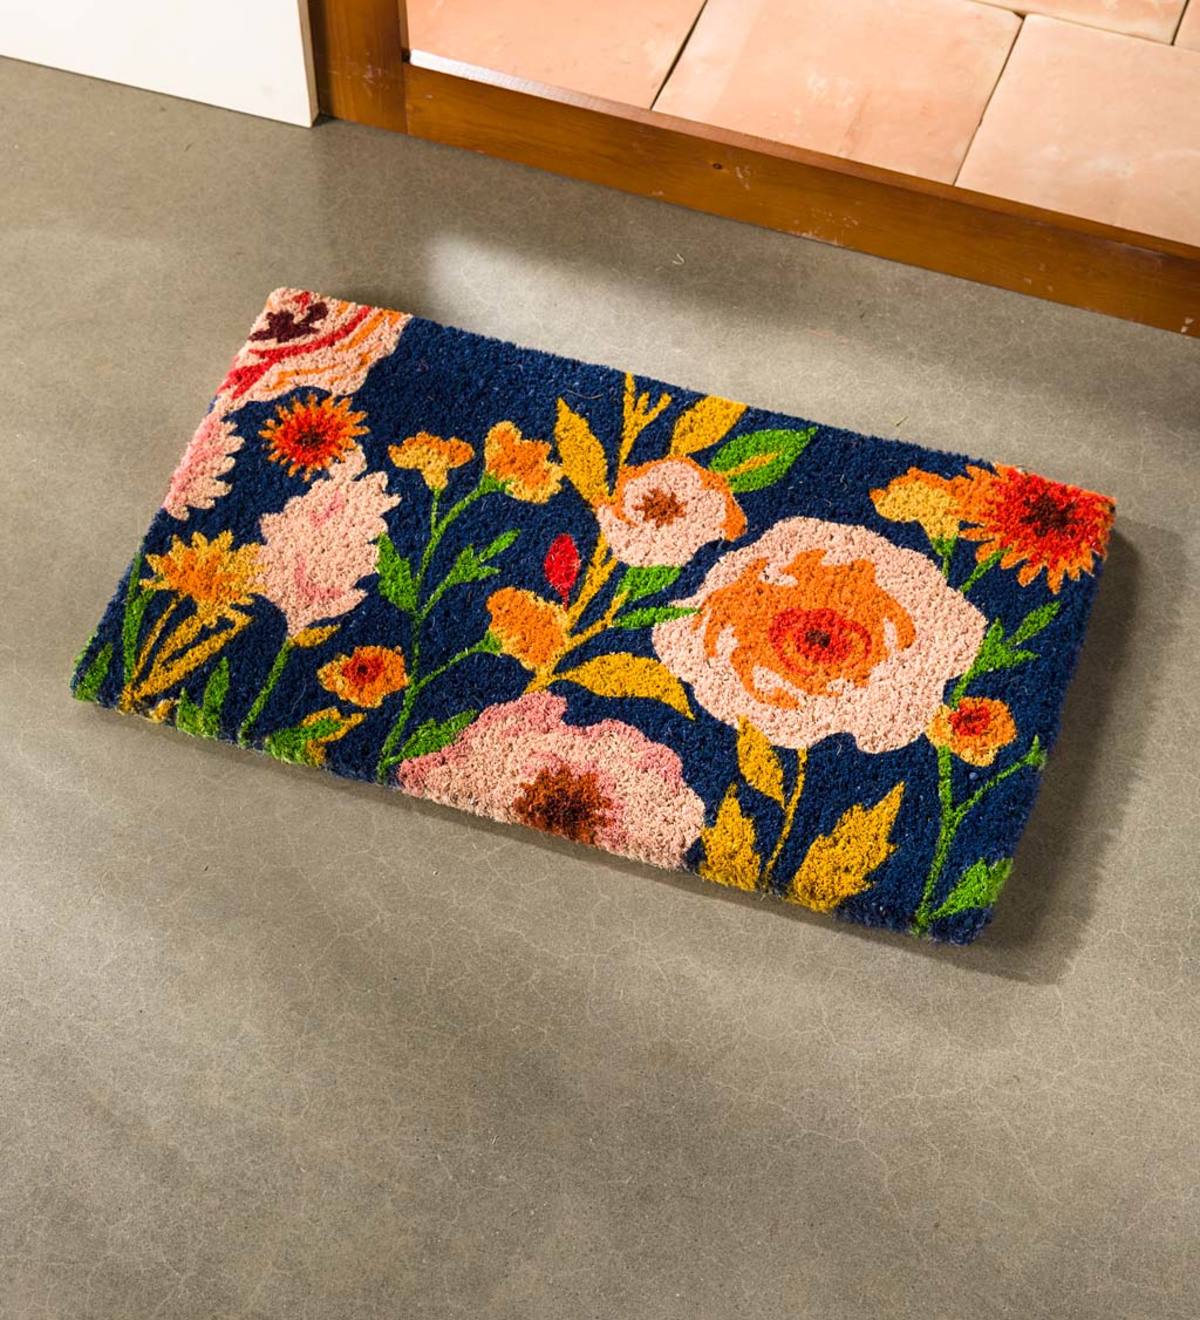 Terra Cotta Flower Mosaic Door Mat, Colorful Welcome Mat